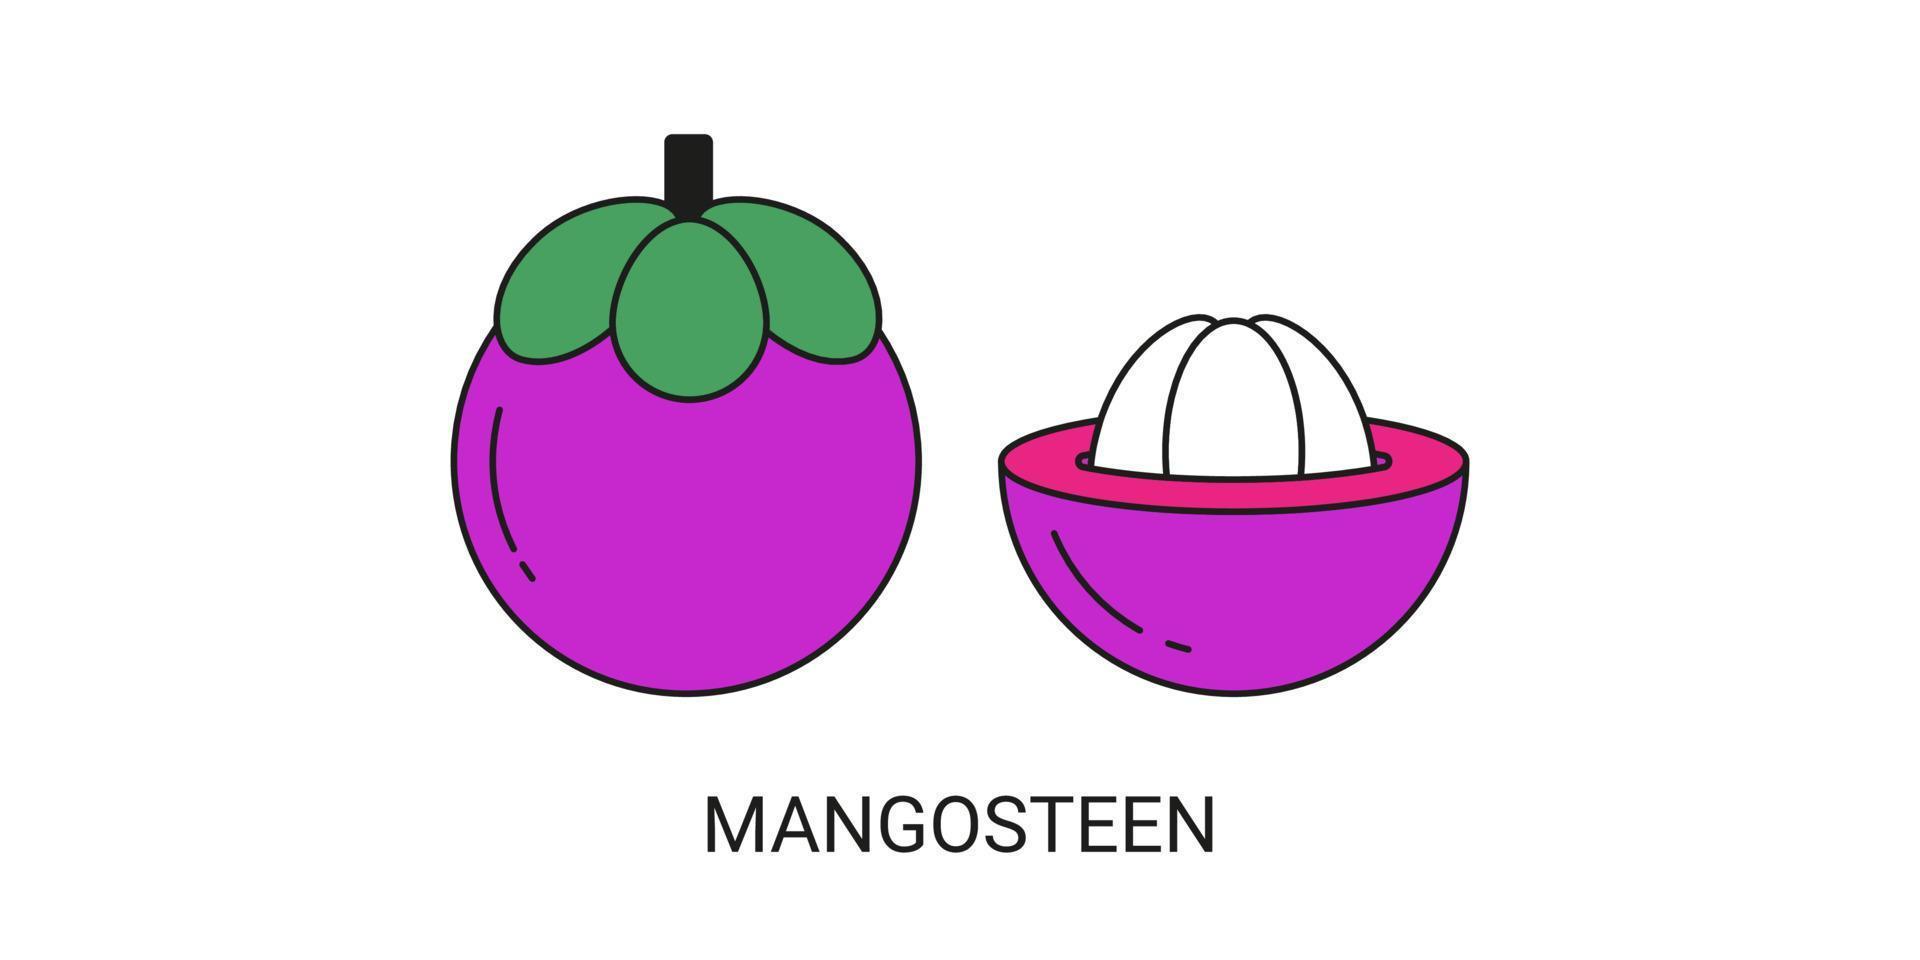 mangostan exotisches fruchtikonenelement für web vektor